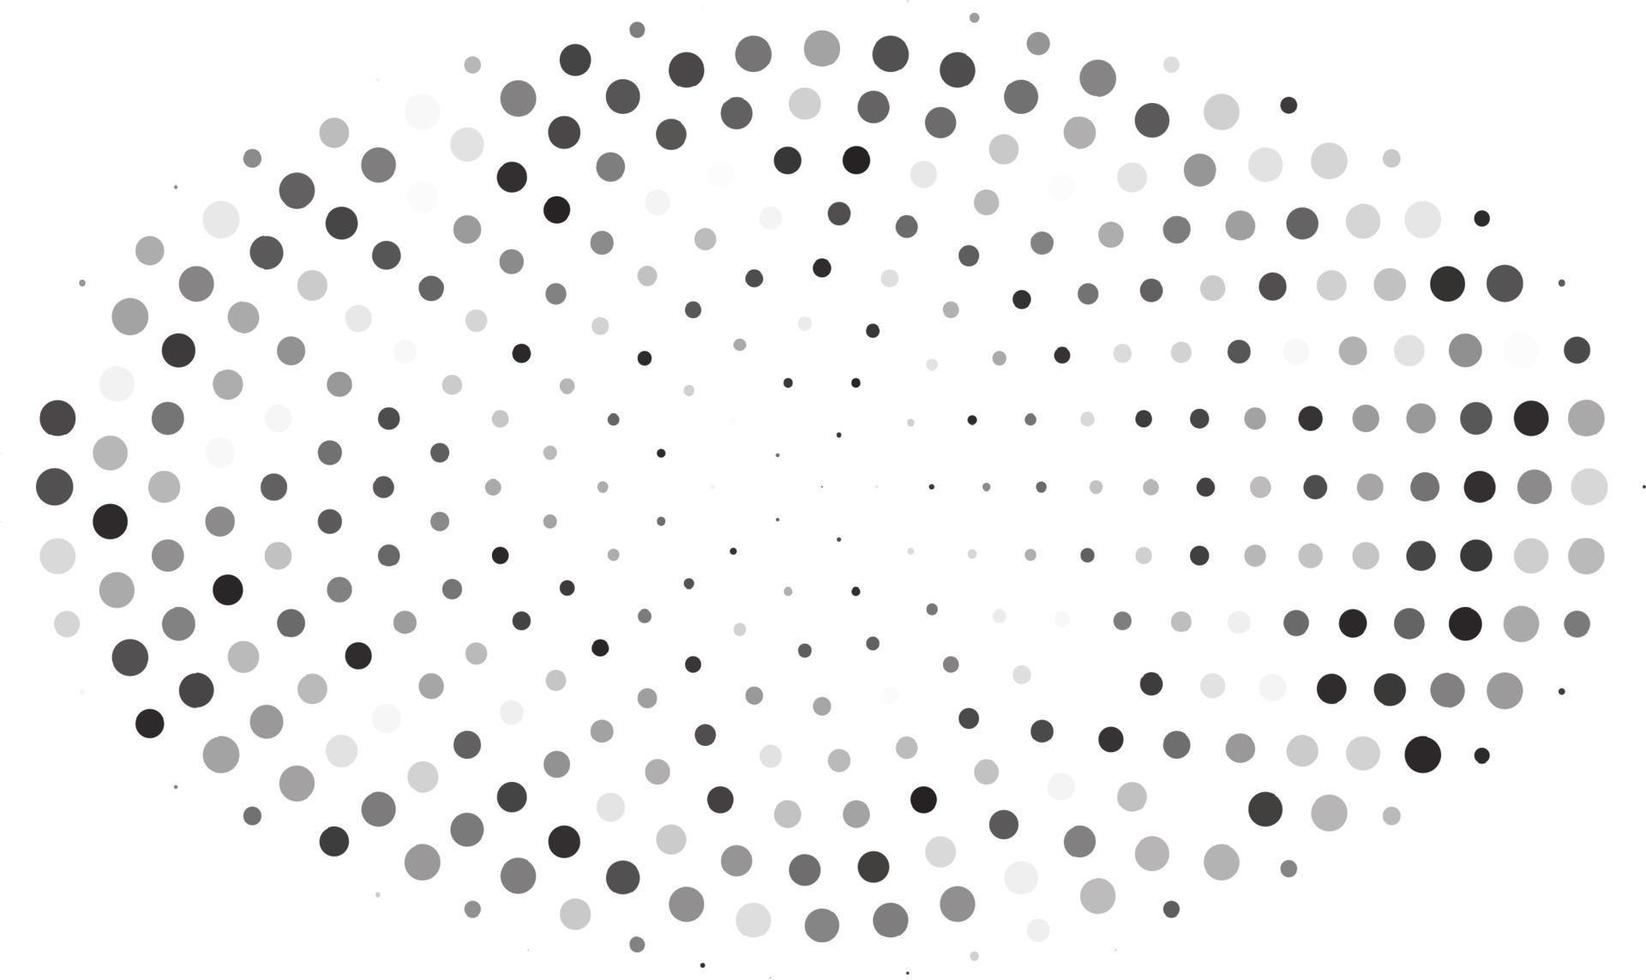 degradado de semitonos retro de puntos. fondo monocromo de semitono blanco y negro con círculos. ilustración vectorial vector